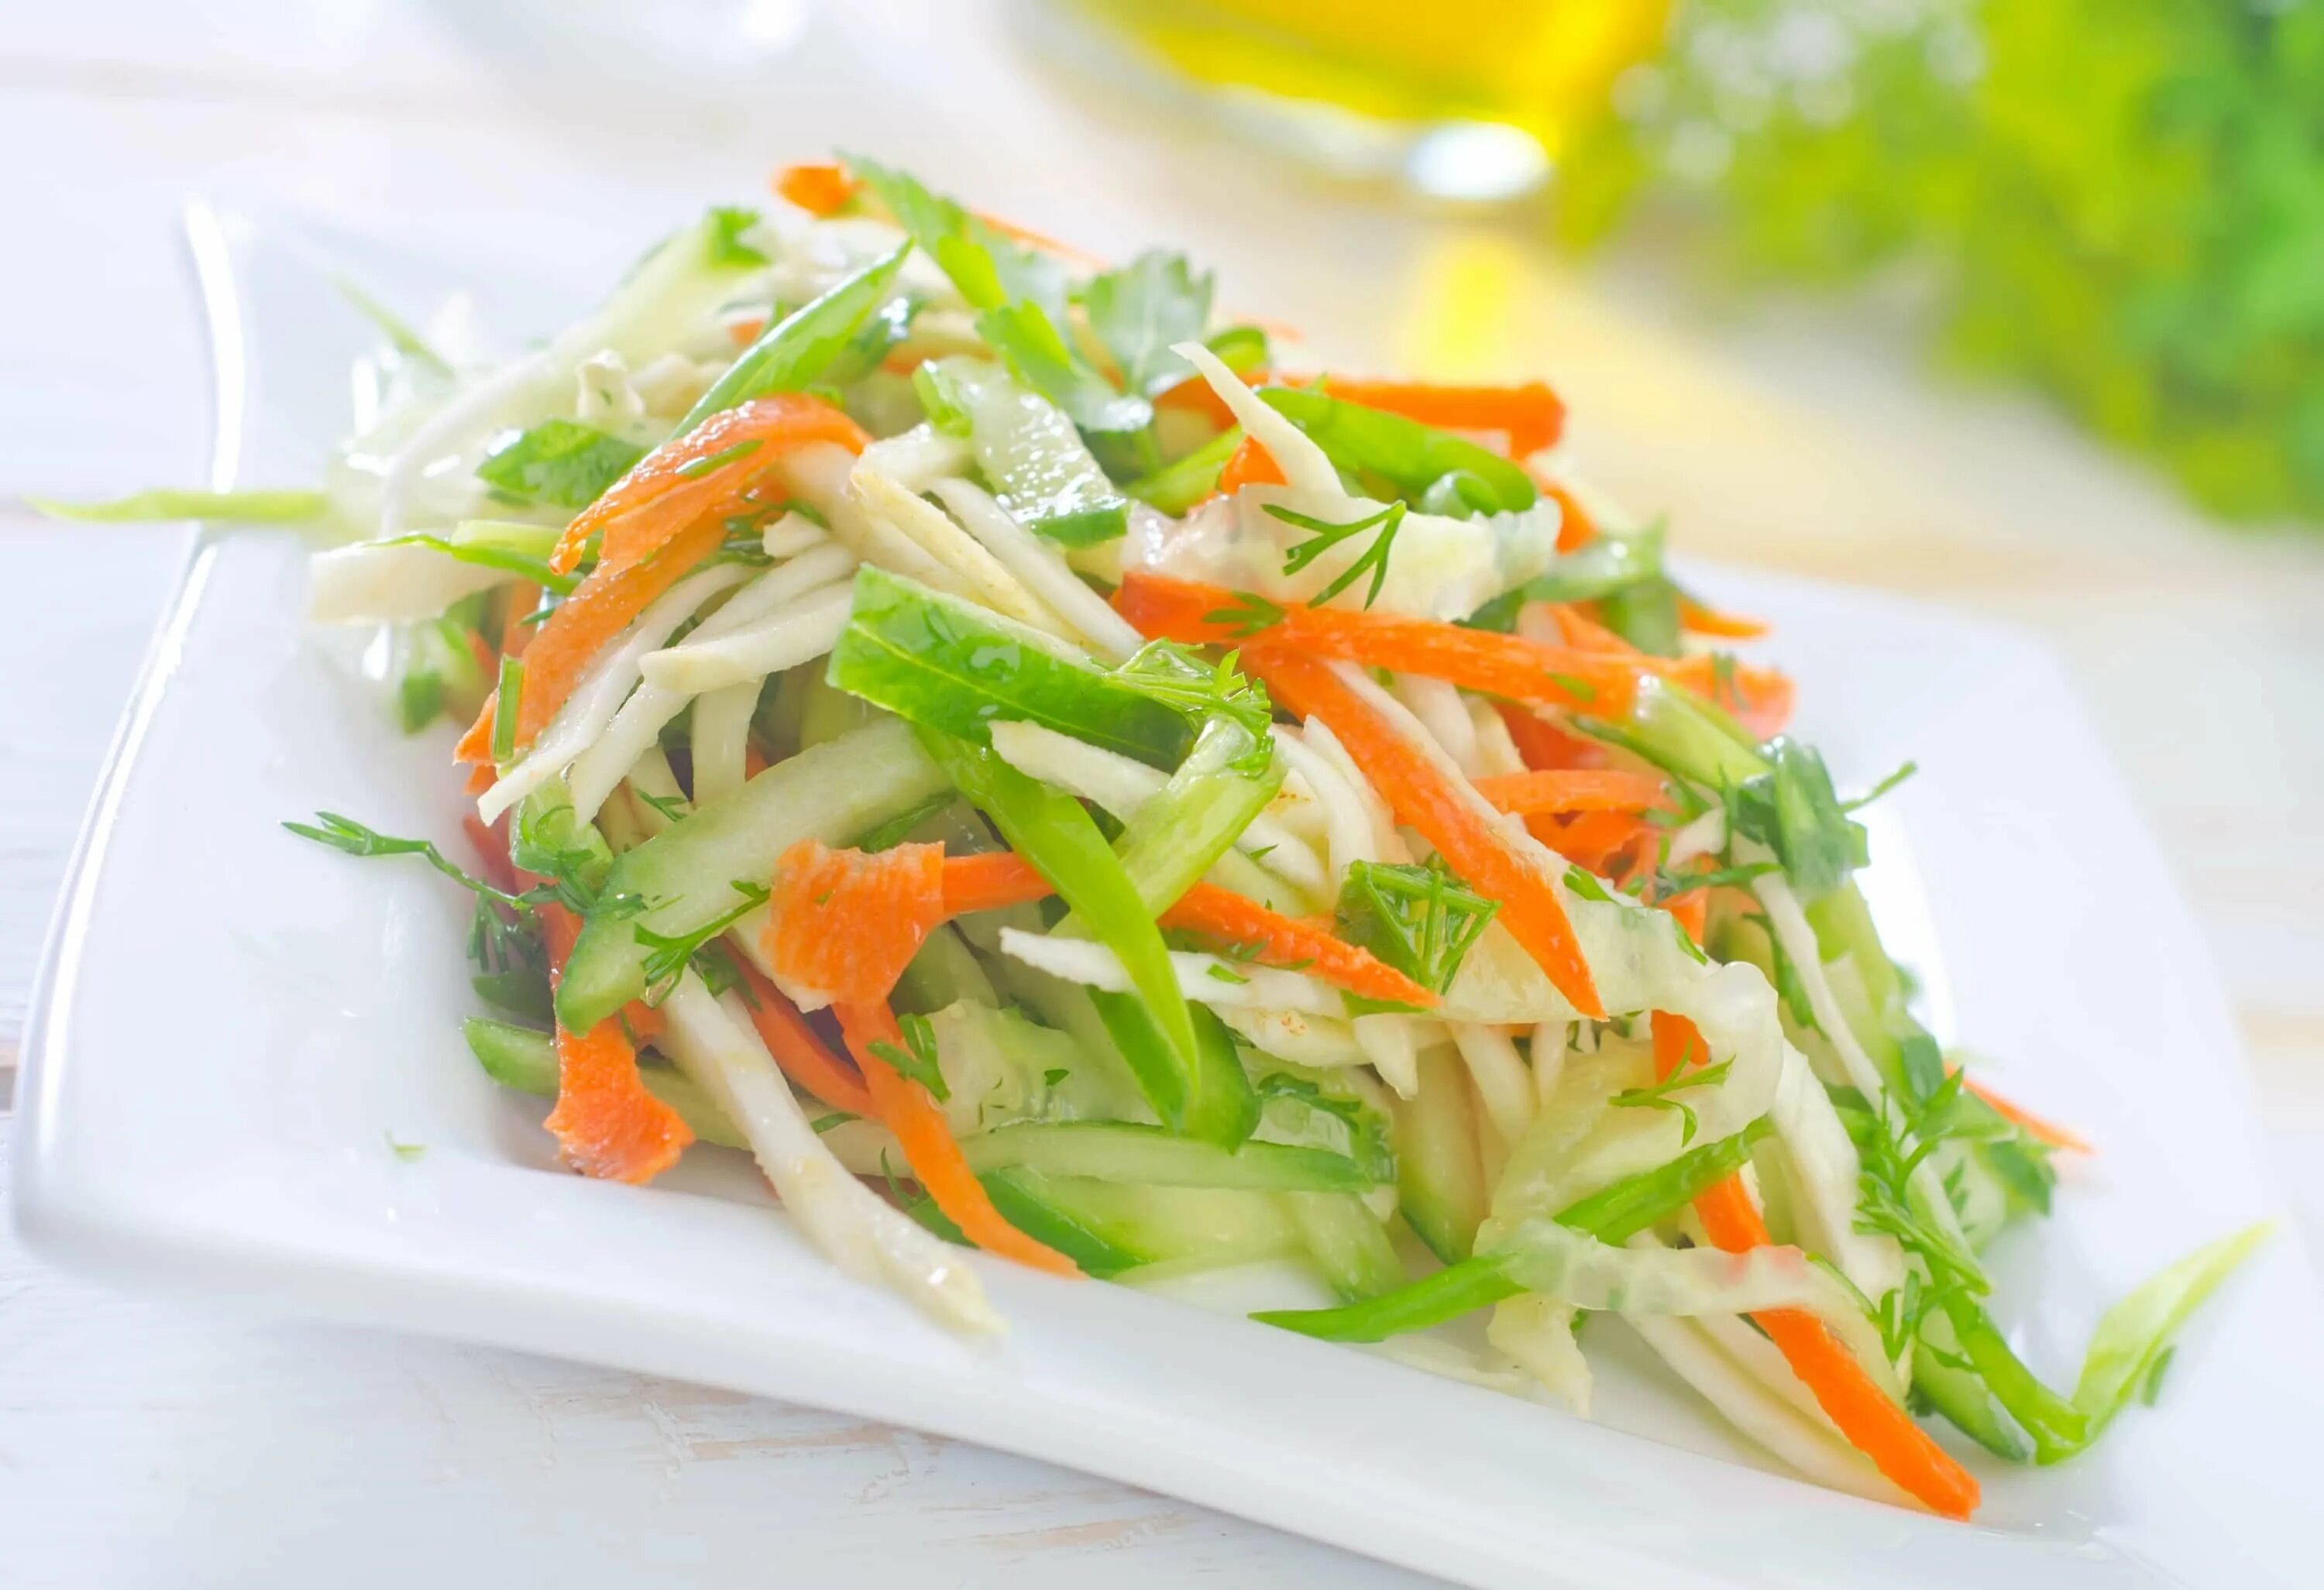 Салат яблоко морковь масло салат. Витаминный (капуста, перец, огурец, морковь) 100г - 35р. Салат из капусты. Салат витаминный. Овощной витаминный салат.